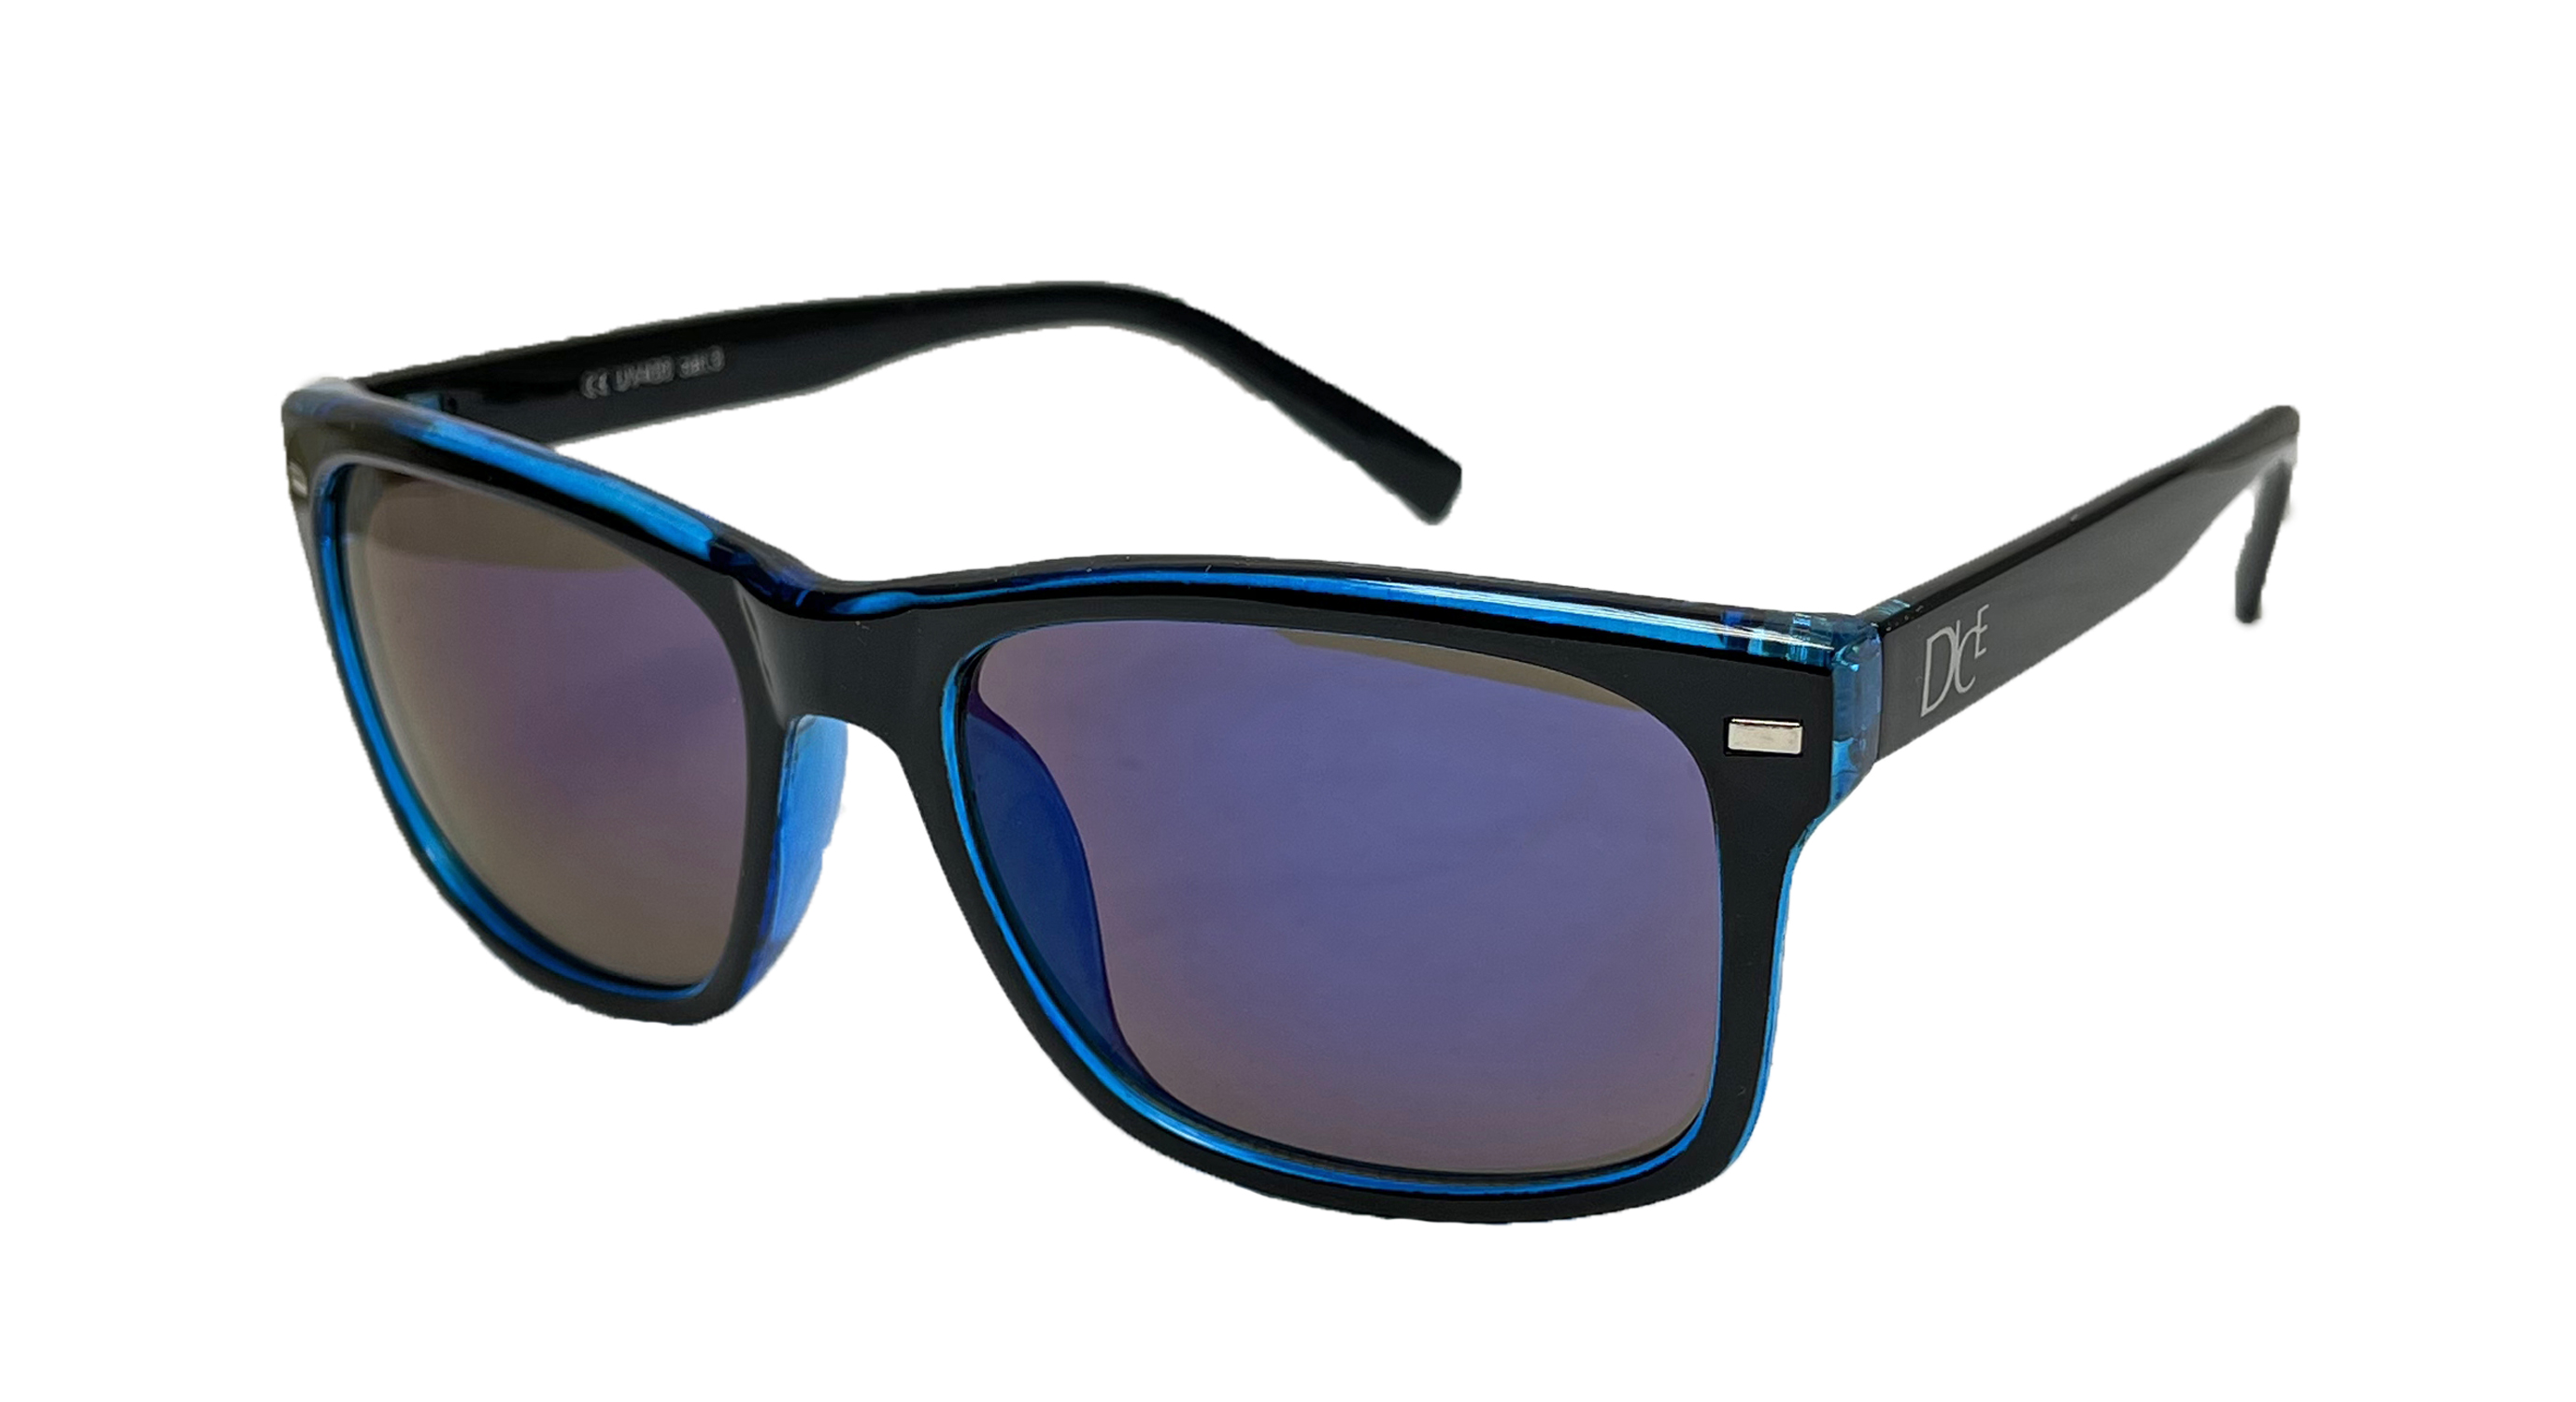 Okulary przeciwsłoneczne Dice d06210-2 Blue :: Sklep Sportowy - outlet  sportowy, koncówki kolekcji, wyprzedaże, narty, deski, wiązania, sprzet  narciarski, buty sportowe